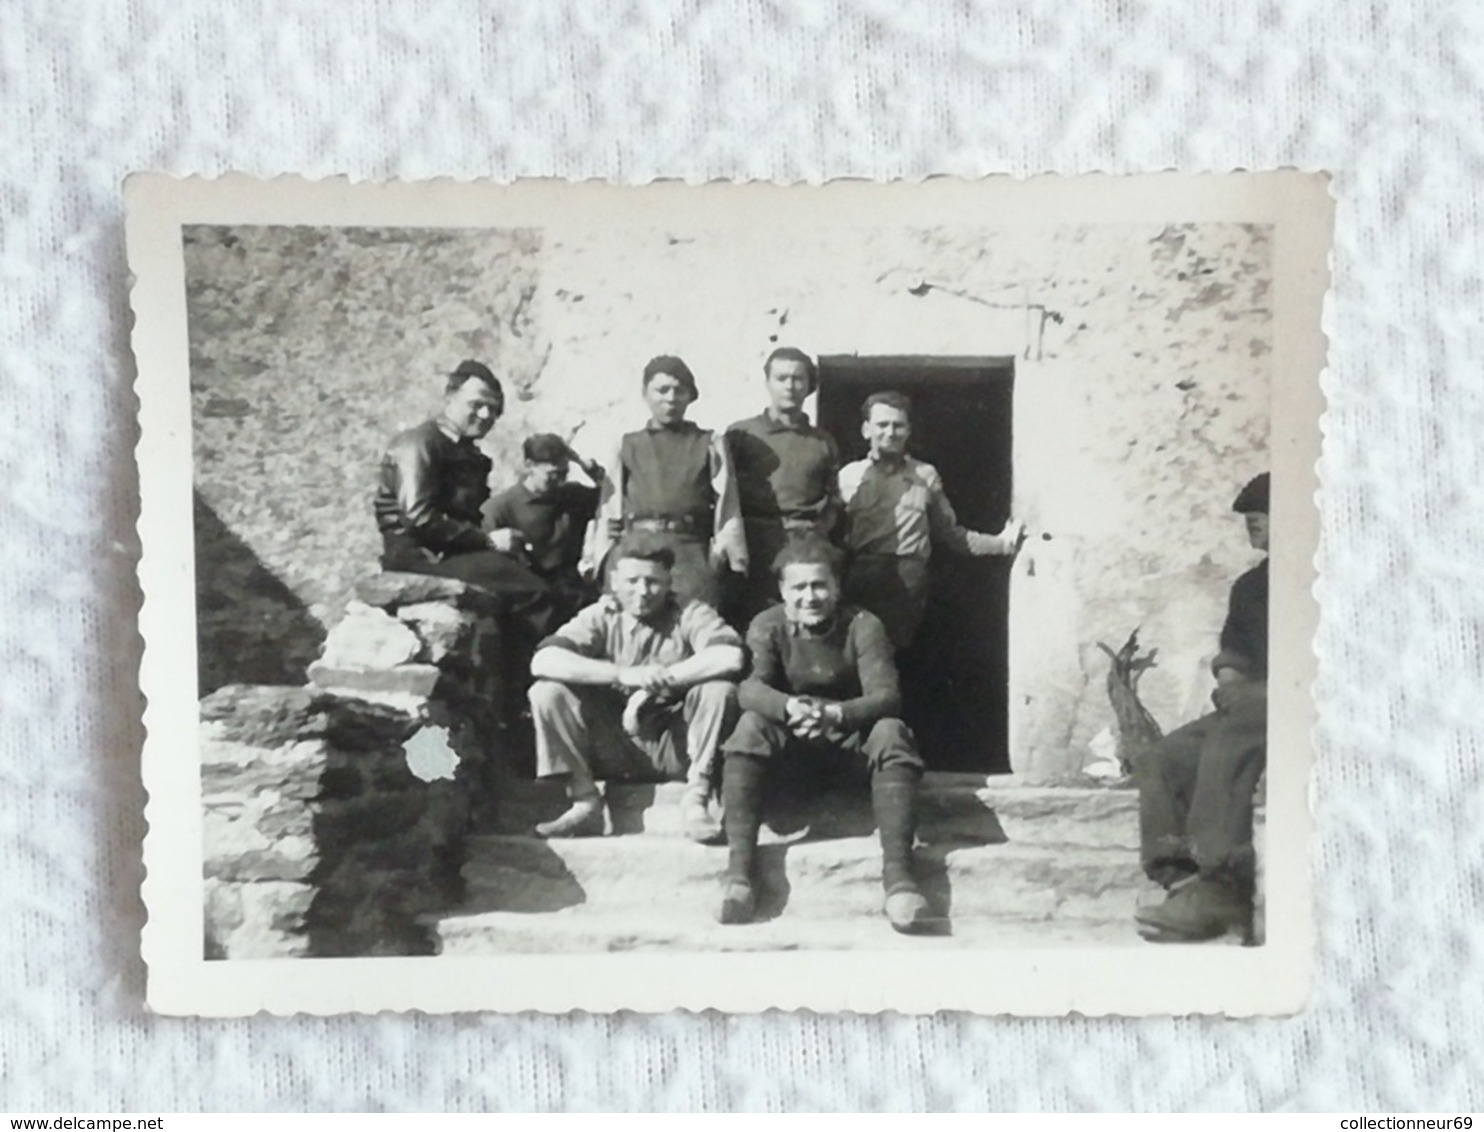 19 photos originale d'un groupe / Soldats Camps Chantier de Jeunesse Français 1940 pendant l'occupation